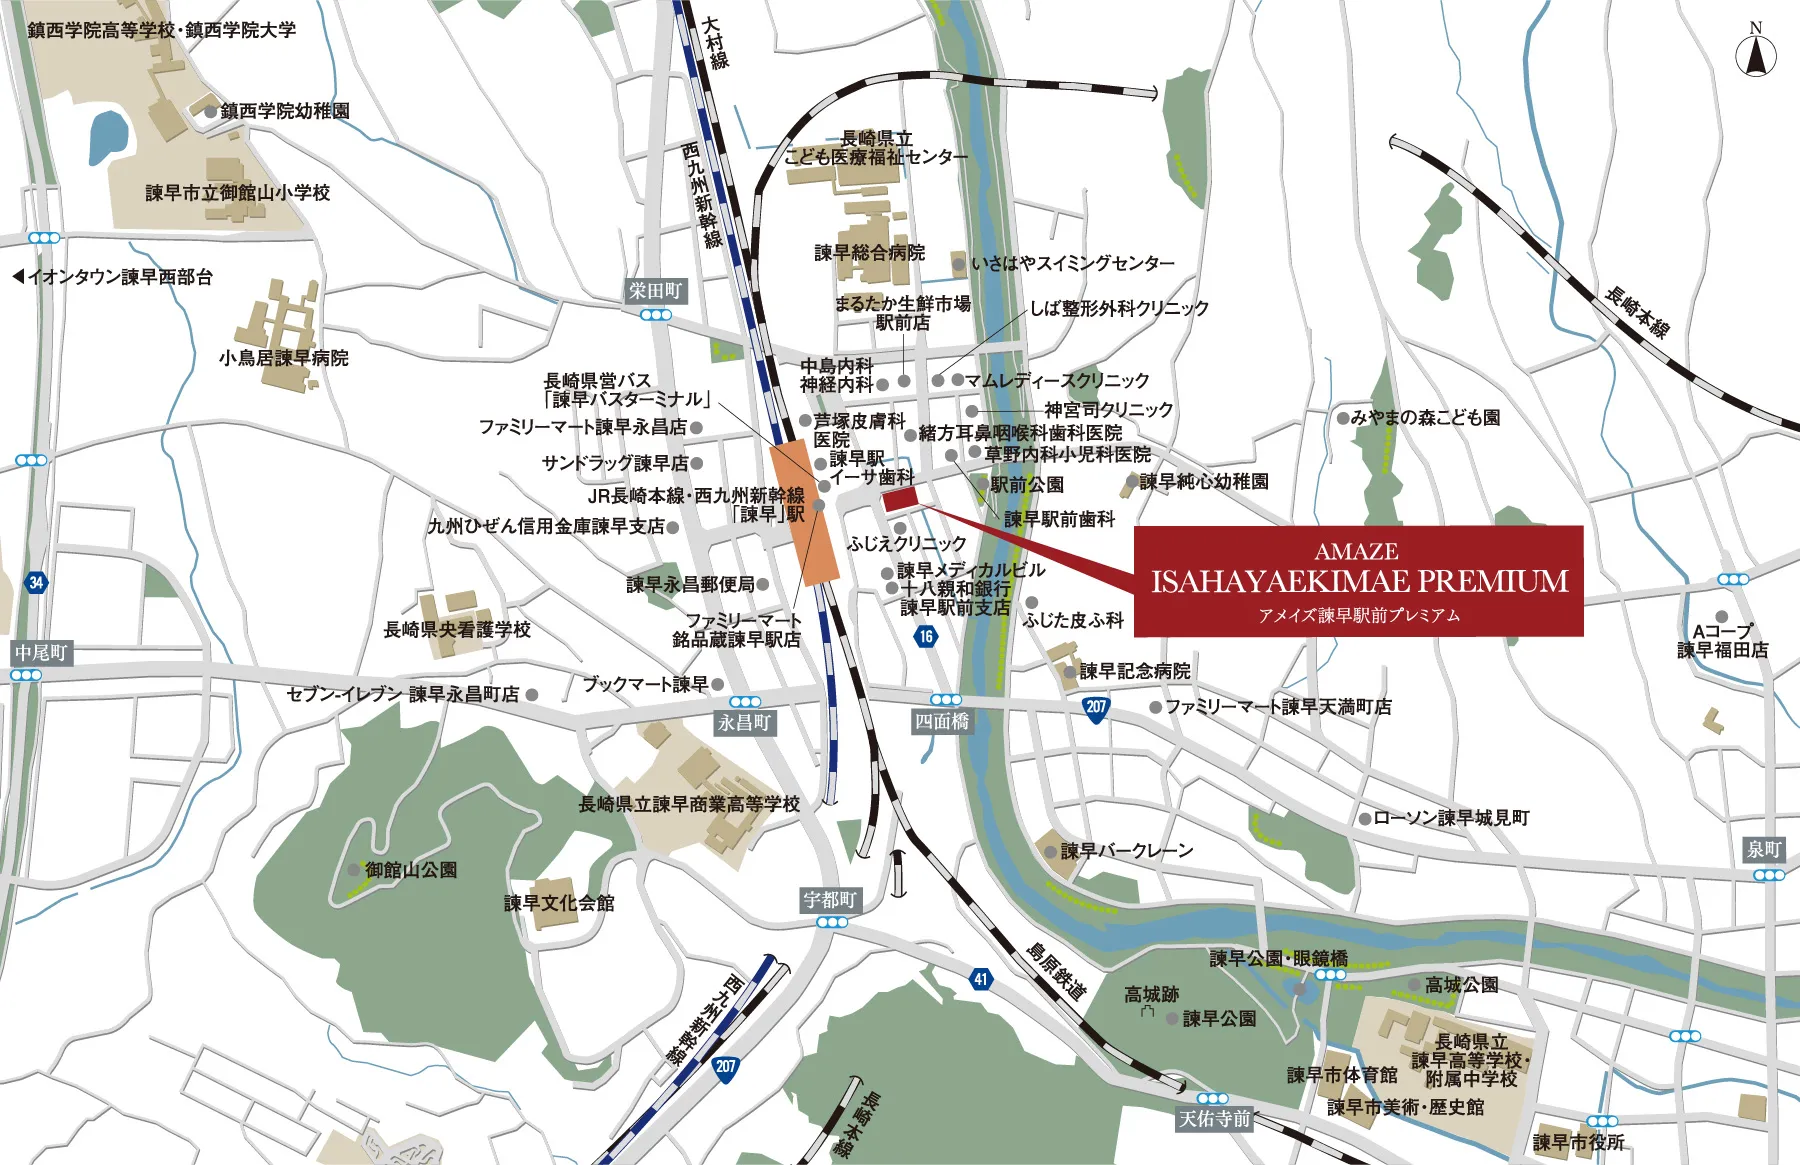 諫早駅前周辺の地図とアメイズ諫早駅前の位置を示したイラスト